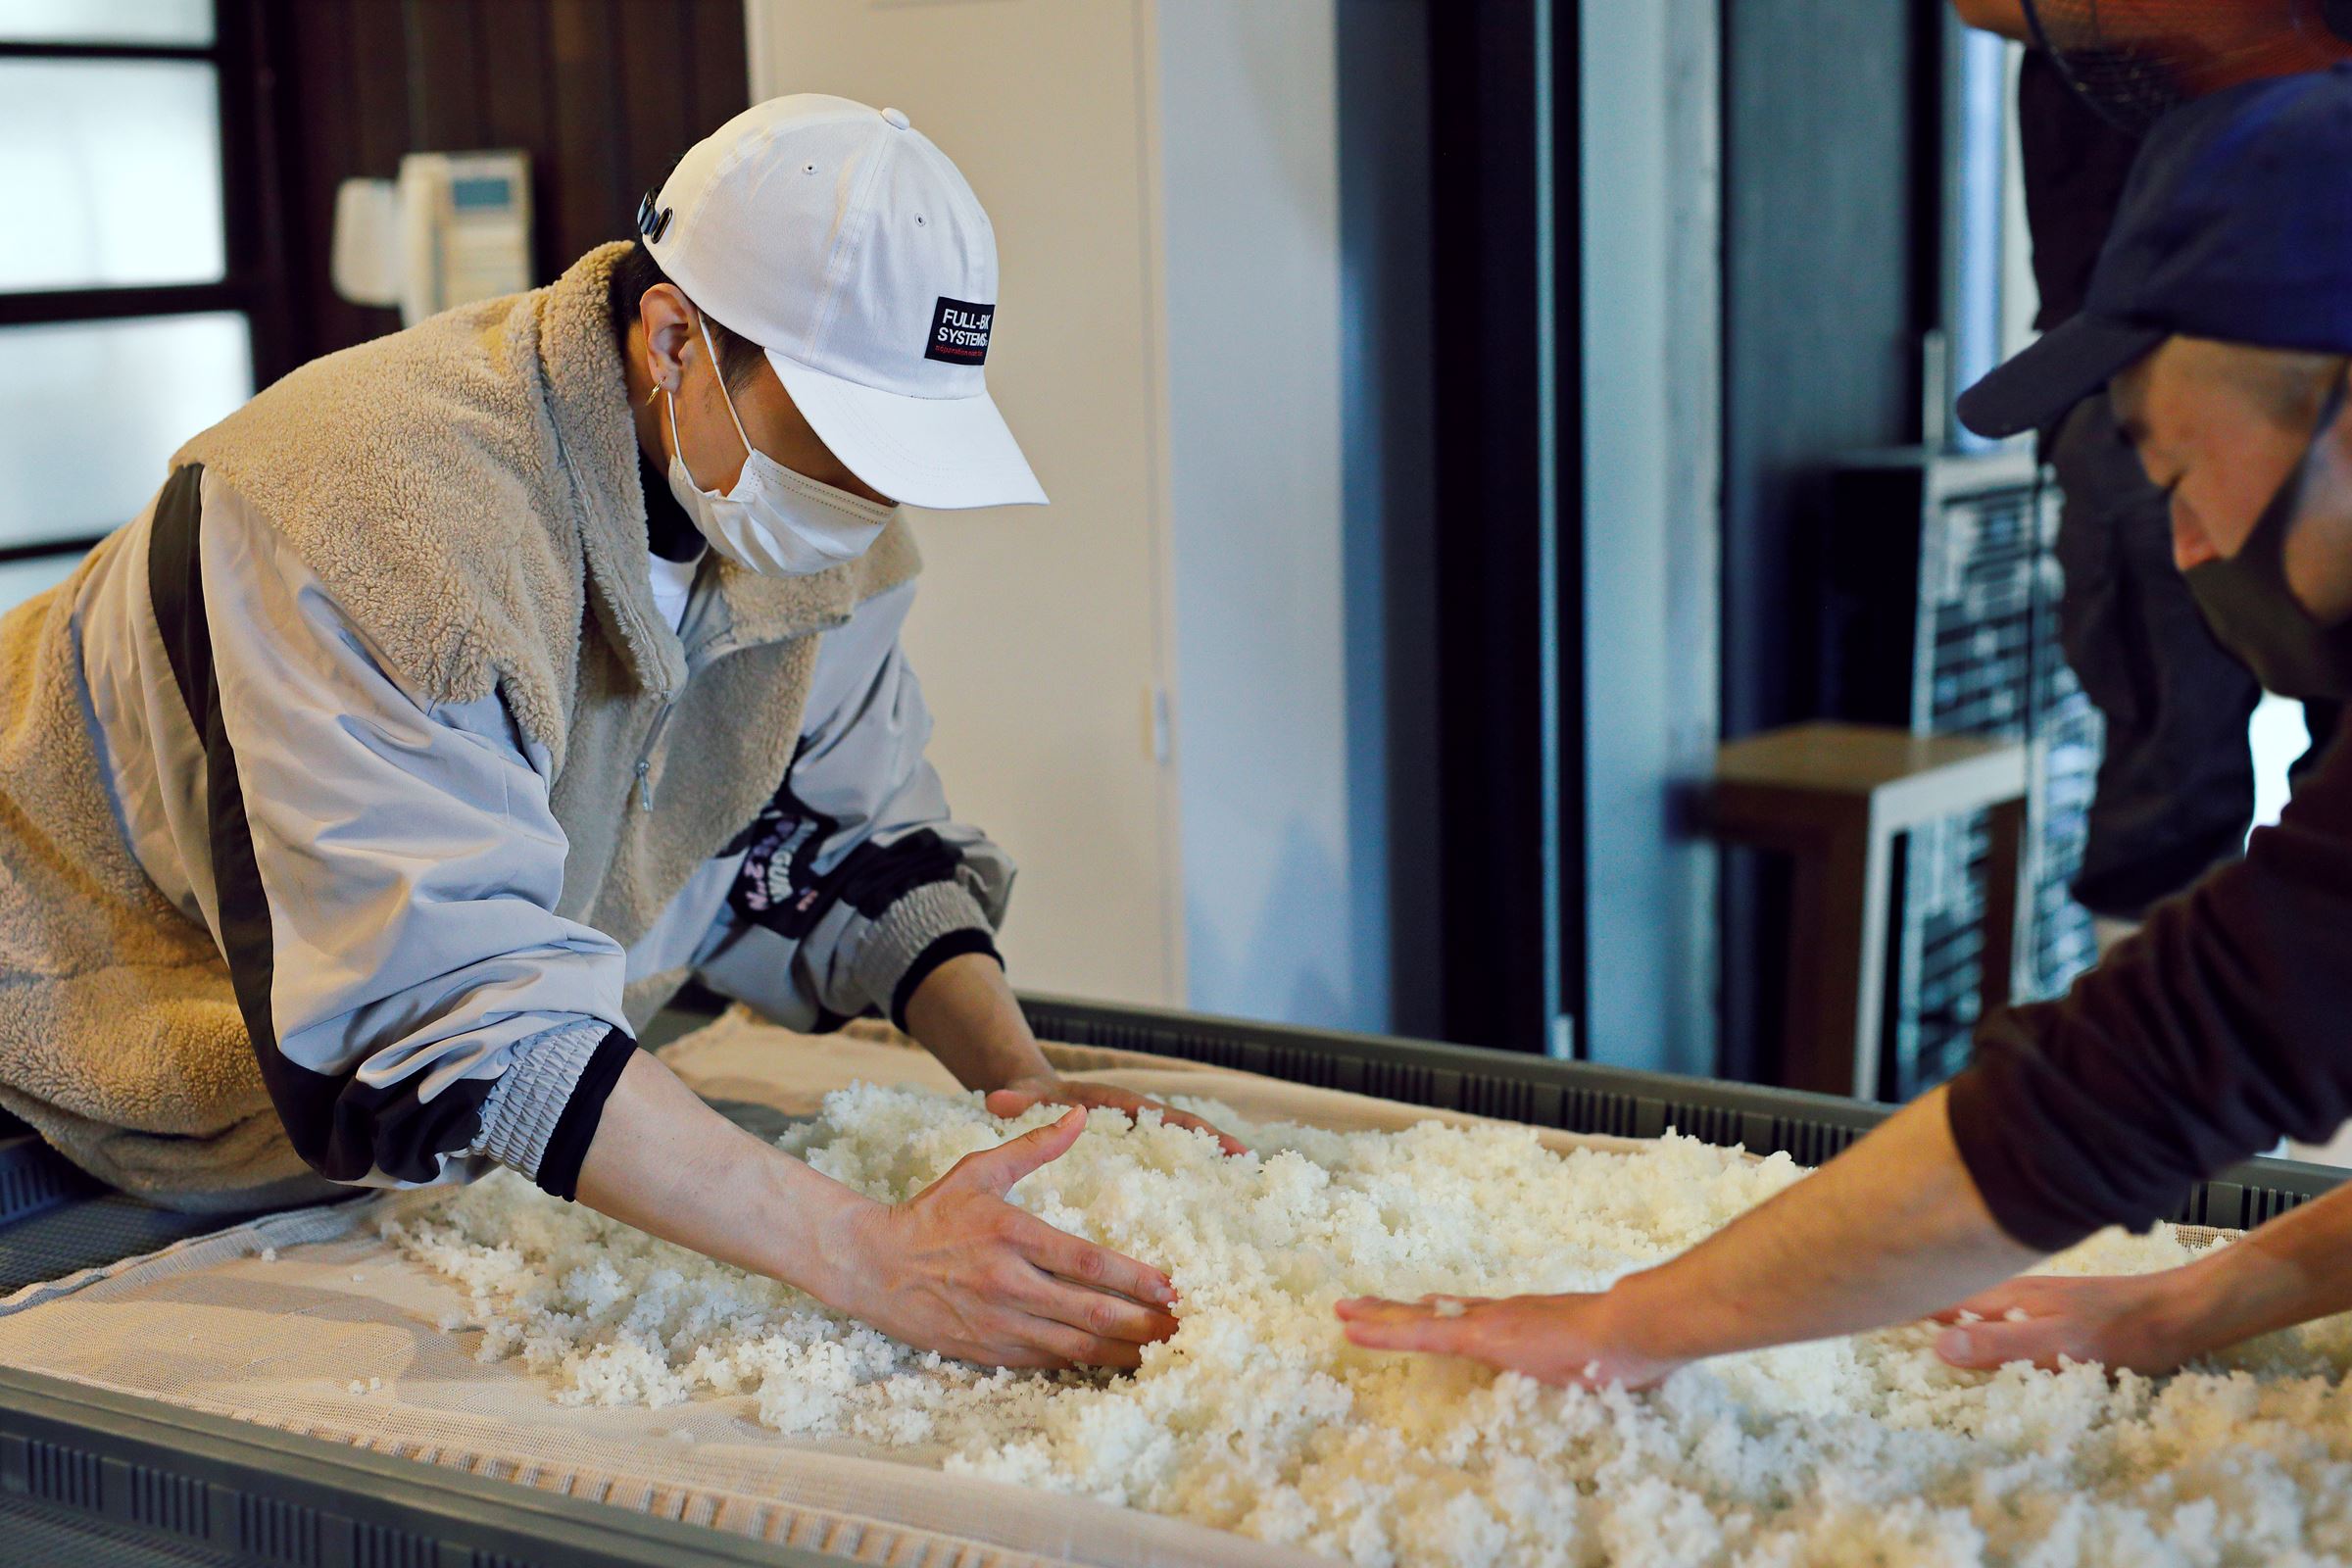 甑を使って蒸し上った米の粗熱を取るため、混ぜながら適温まで冷ましていく